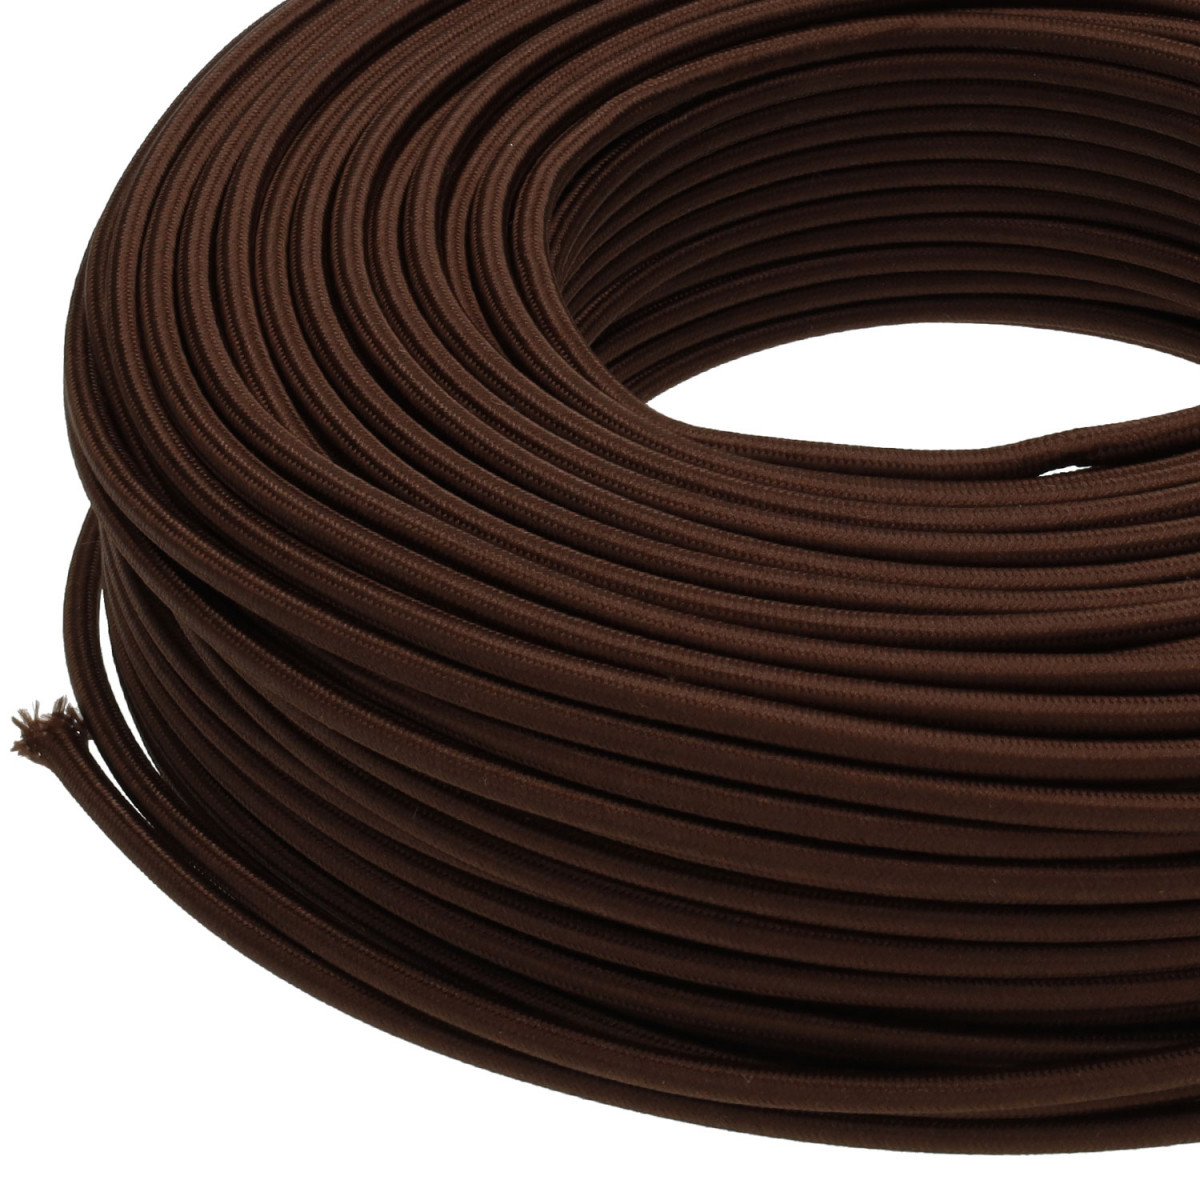  Cable de luz trenzado de tela trenzada de café sólido, 6.6 ft  2x0.75 vintage retro conector de cable eléctrico telar : Industrial y  Científico